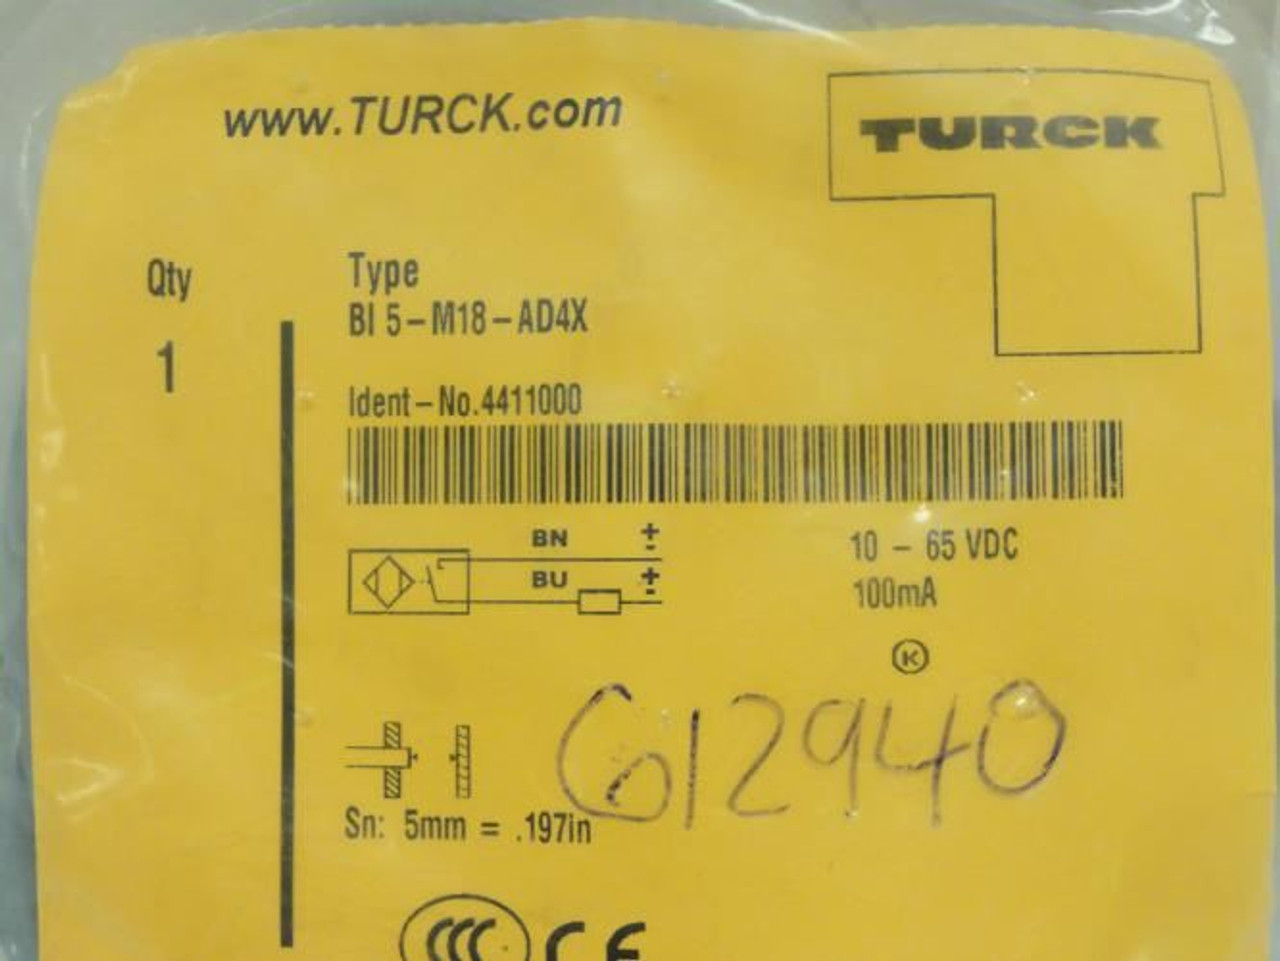 Turck Bi5-MI8-AD4X; Proximity Sensor 10-65VDC